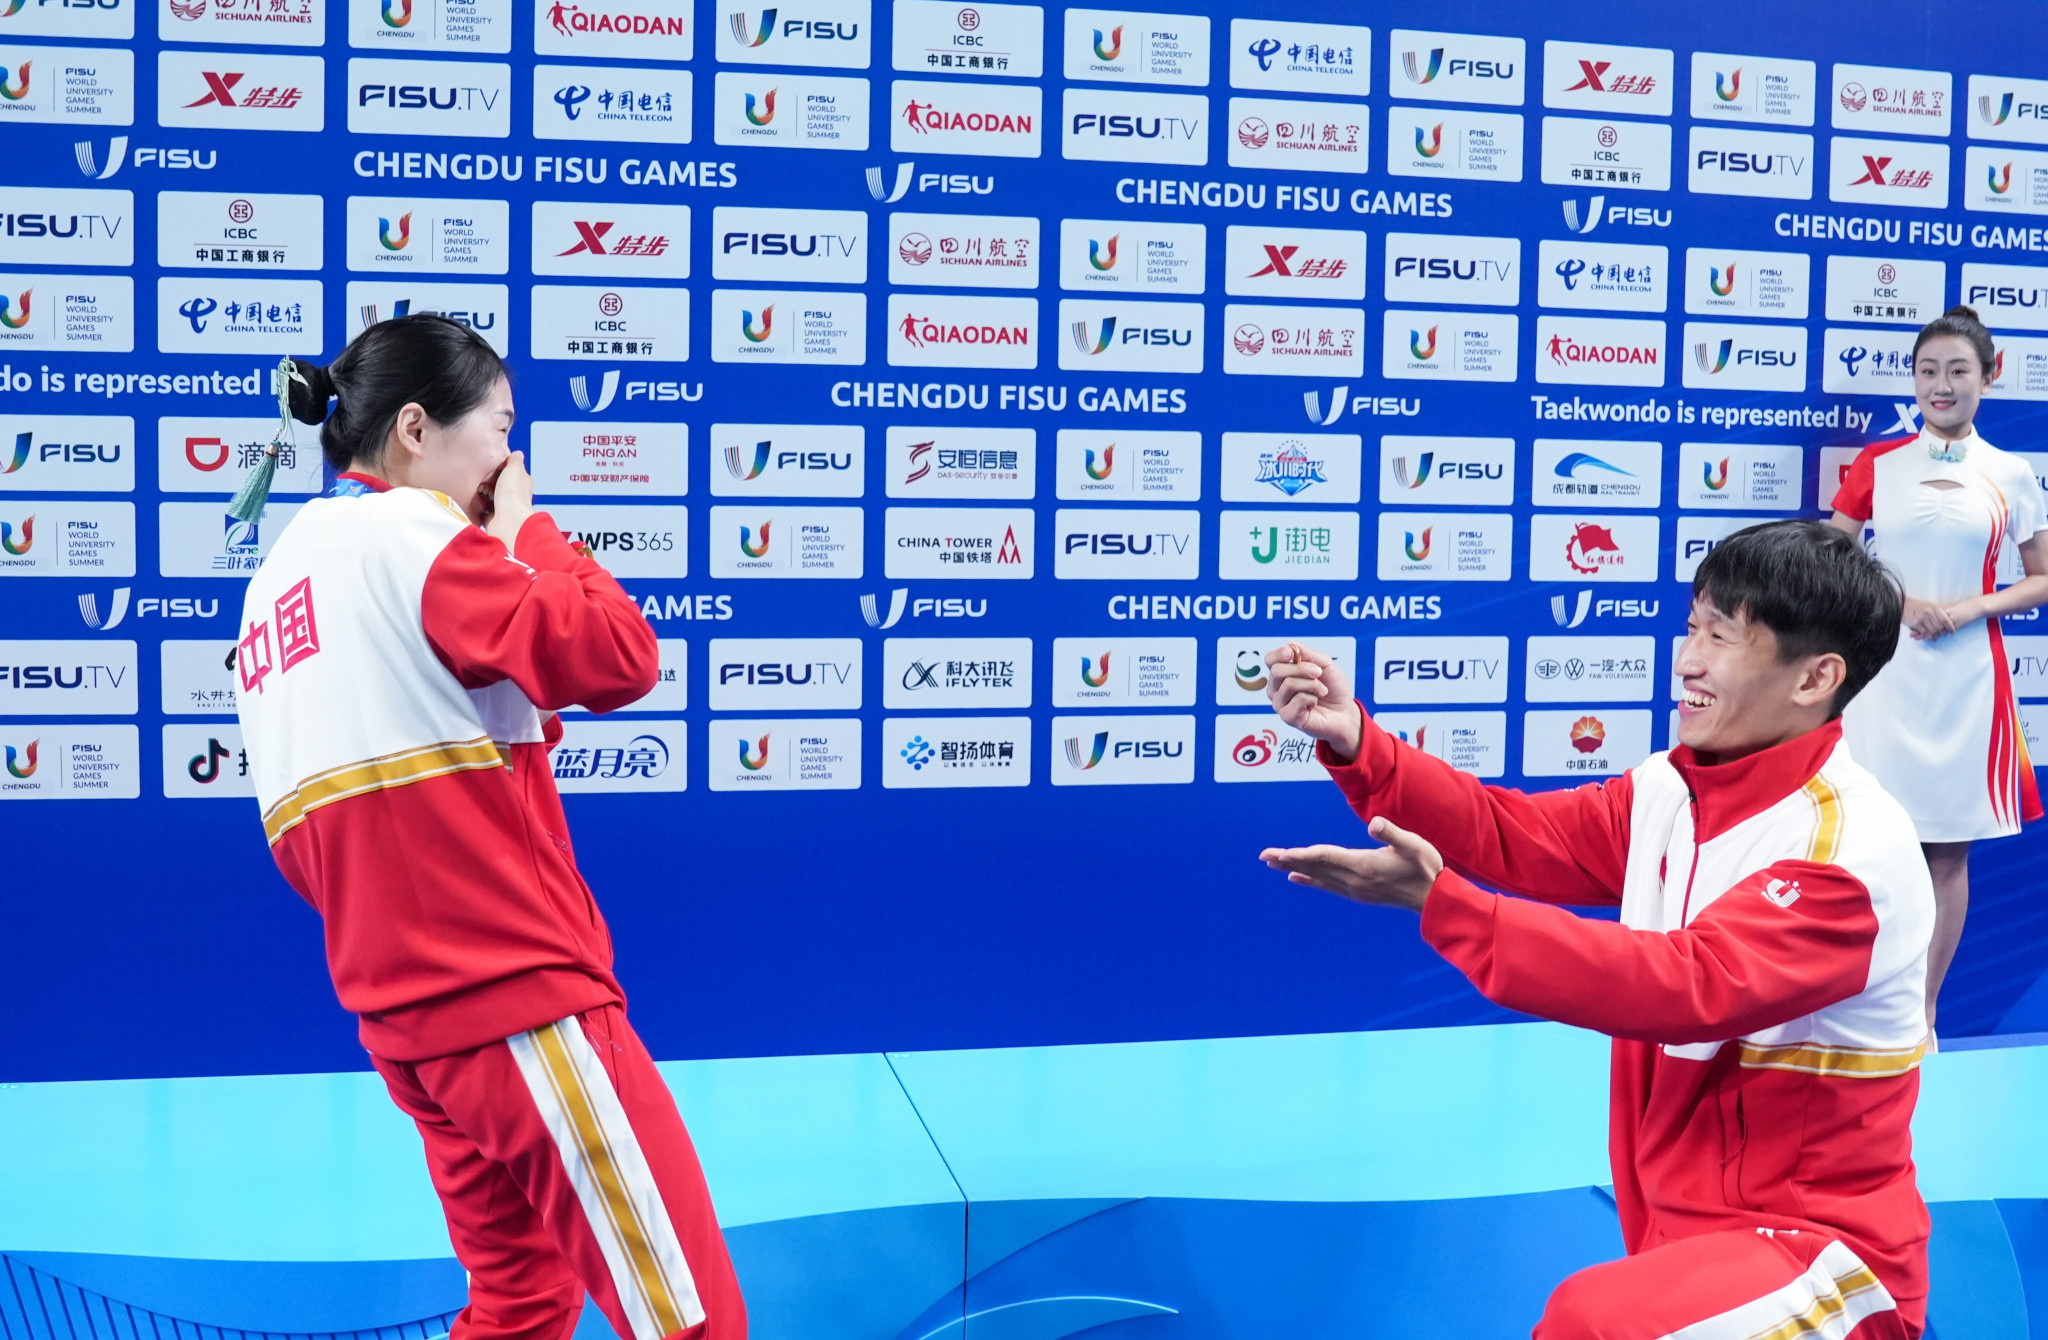 Taekwondo athletes celebrate love at Chengdu 2021 FISU World University Games